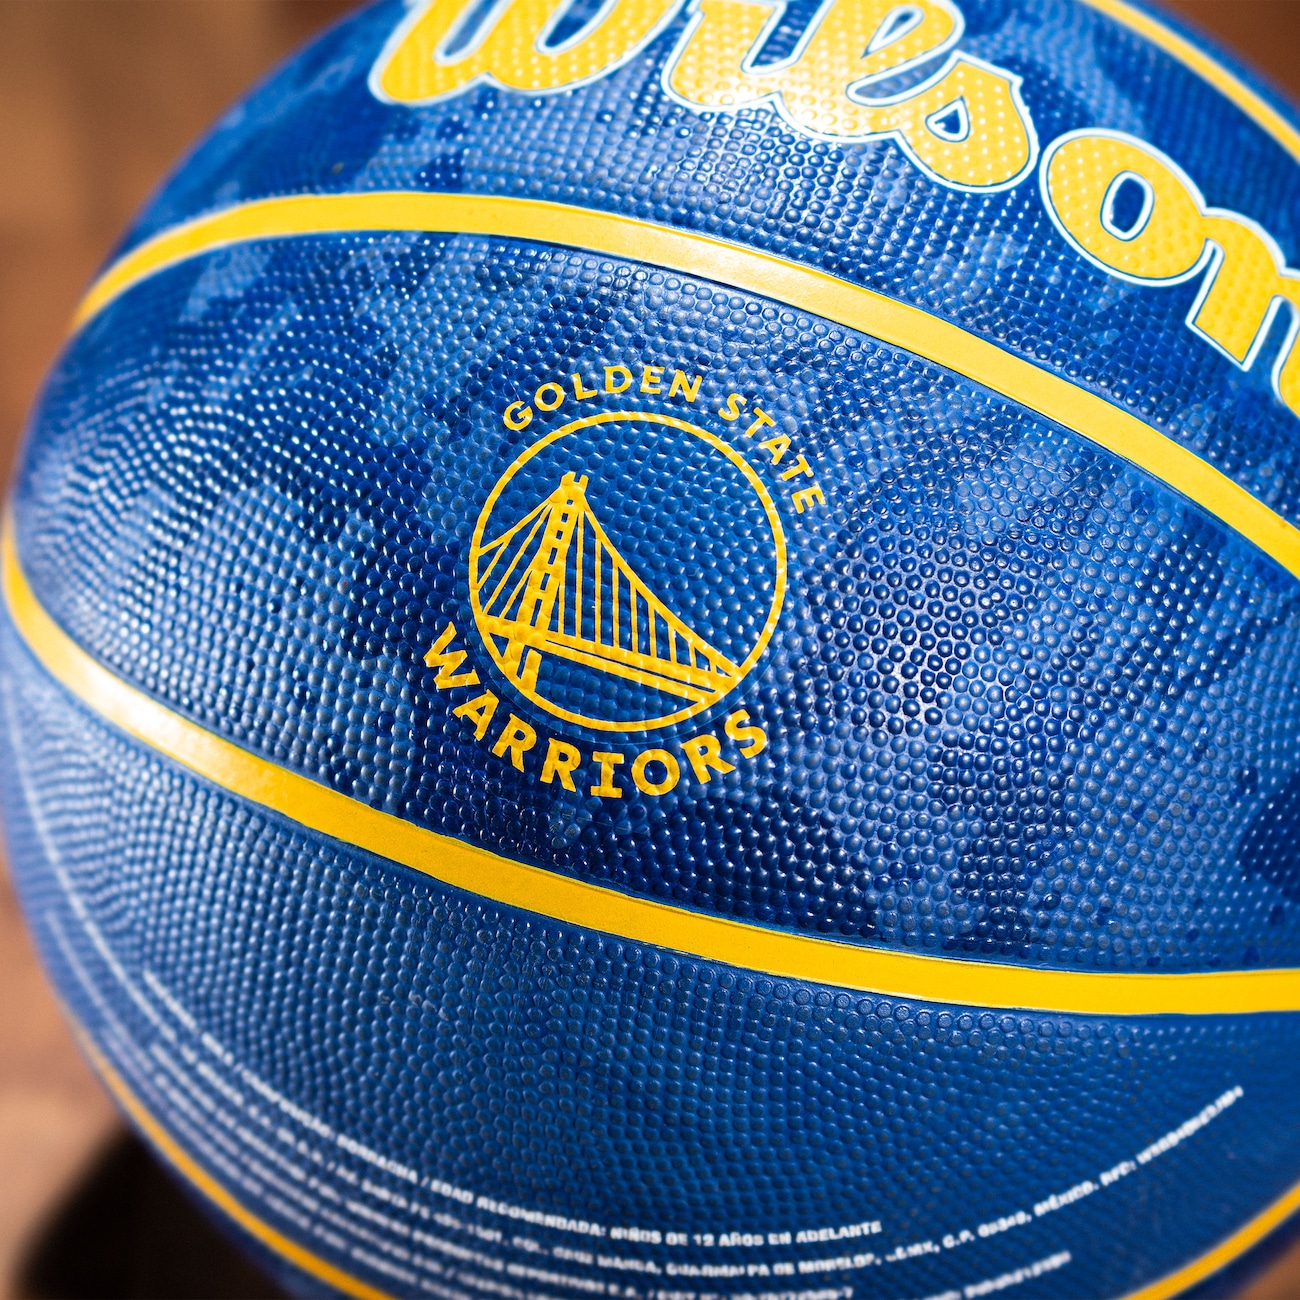 Bola de Basquete Wilson NBA Team Tiedye Golden State Warriors #7 Azul